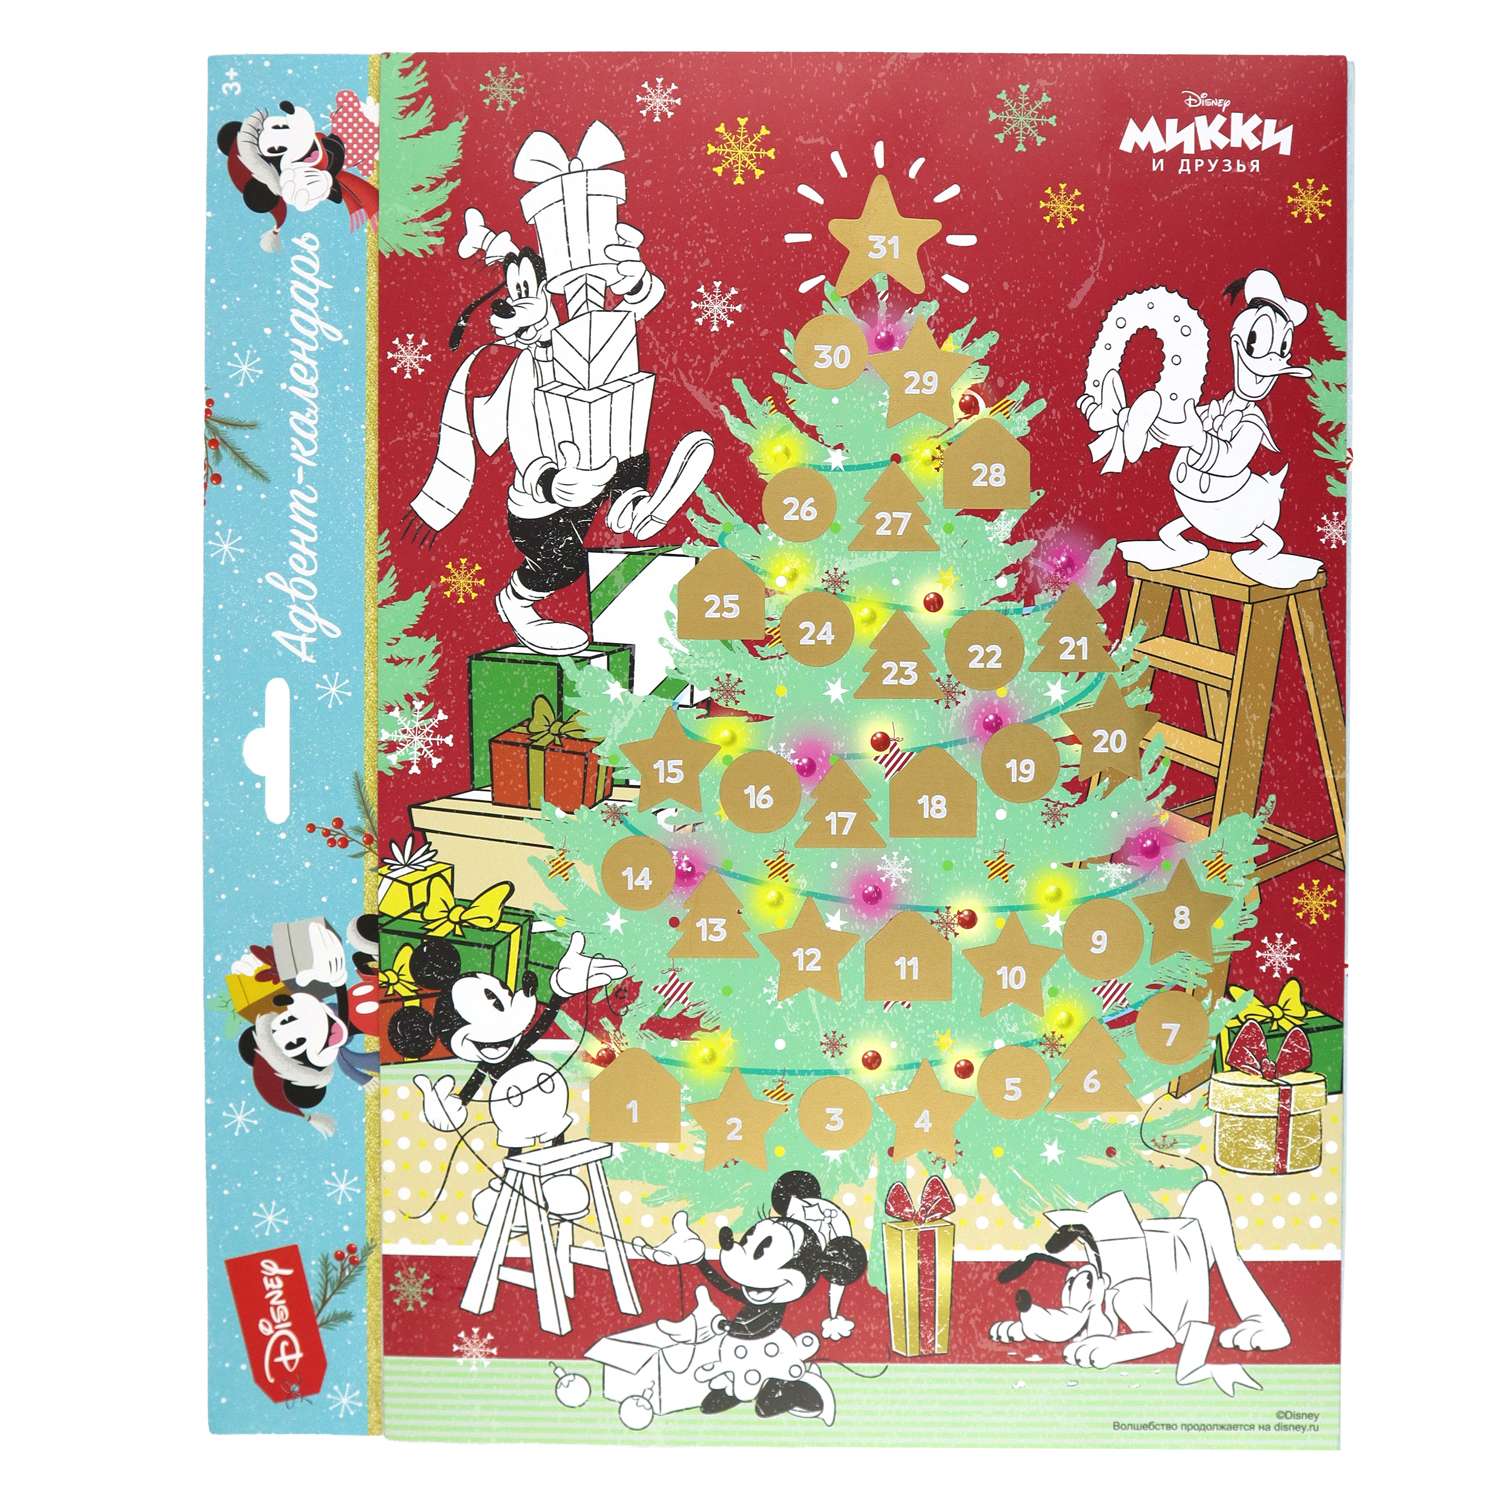 Адвент-календарь раскраска ND PLAY Микки и друзья с маркировкой Disney (дизайн 2) - фото 2